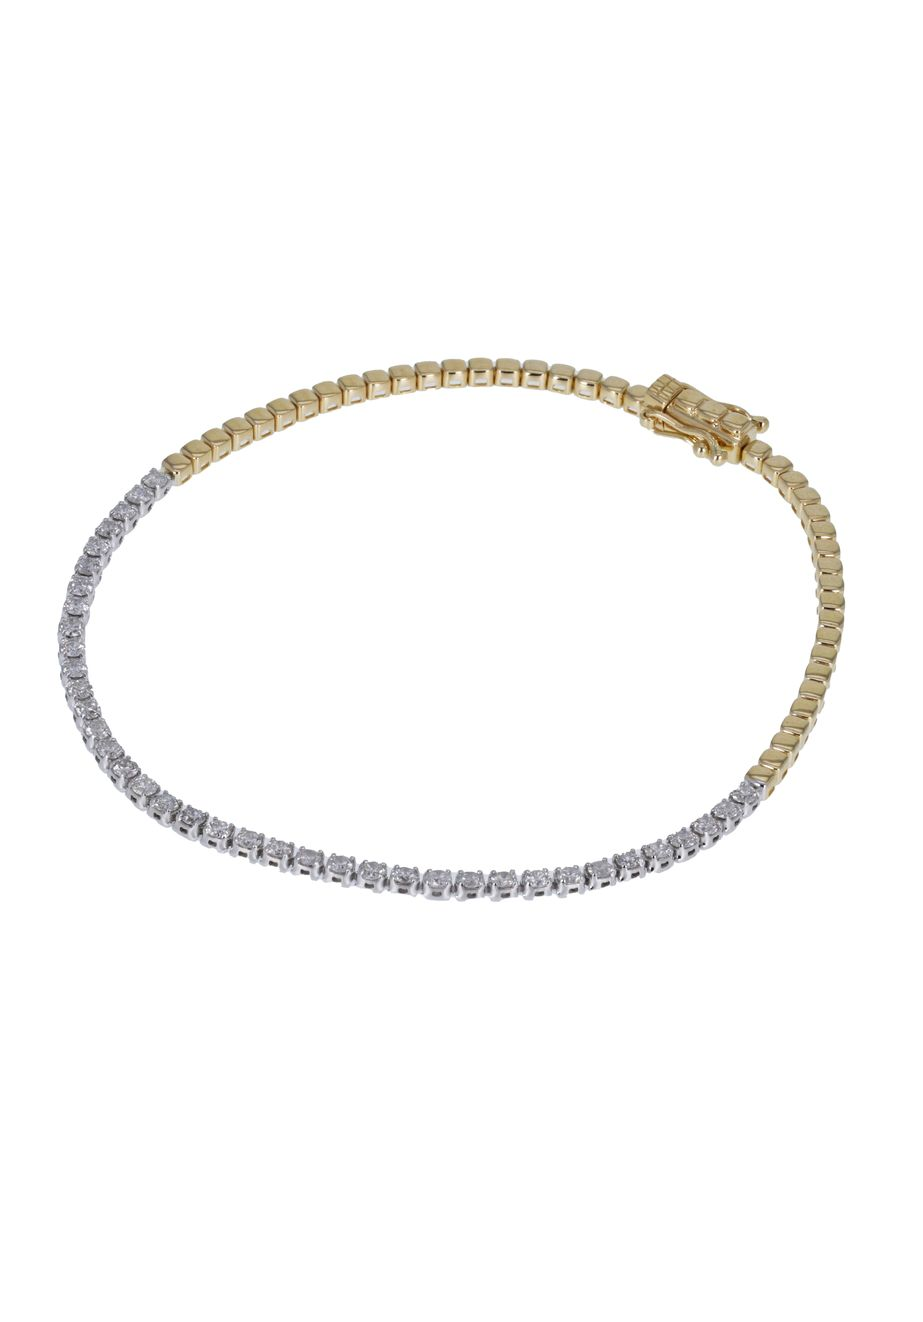 JOAILLERIE CRESUS Bracelet Composition Diamants